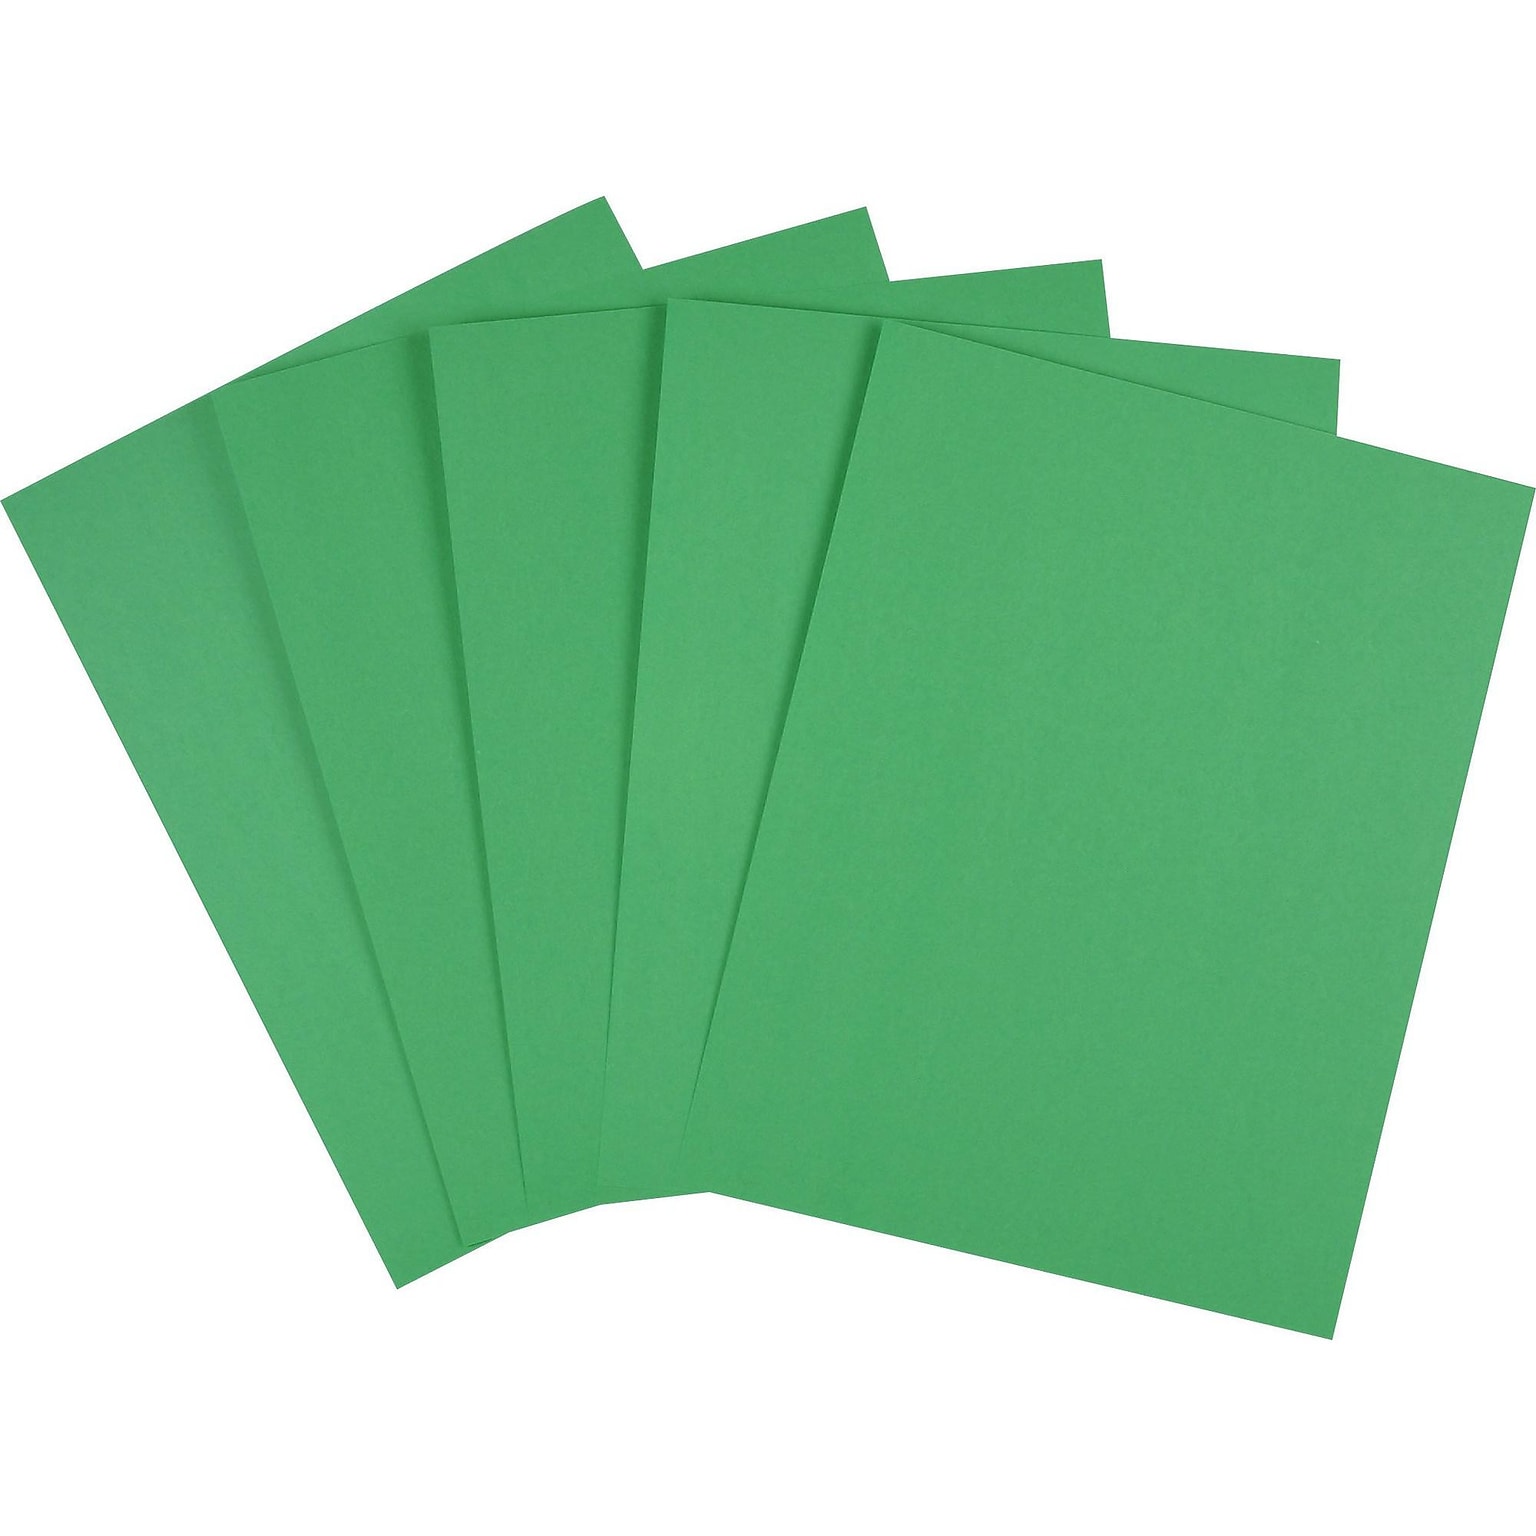 Staples Brights Multipurpose Colored Paper, 24 lb, 8.5 x 11, Dark Green, 500/Ream, 10 Reams/Carton (20103A)